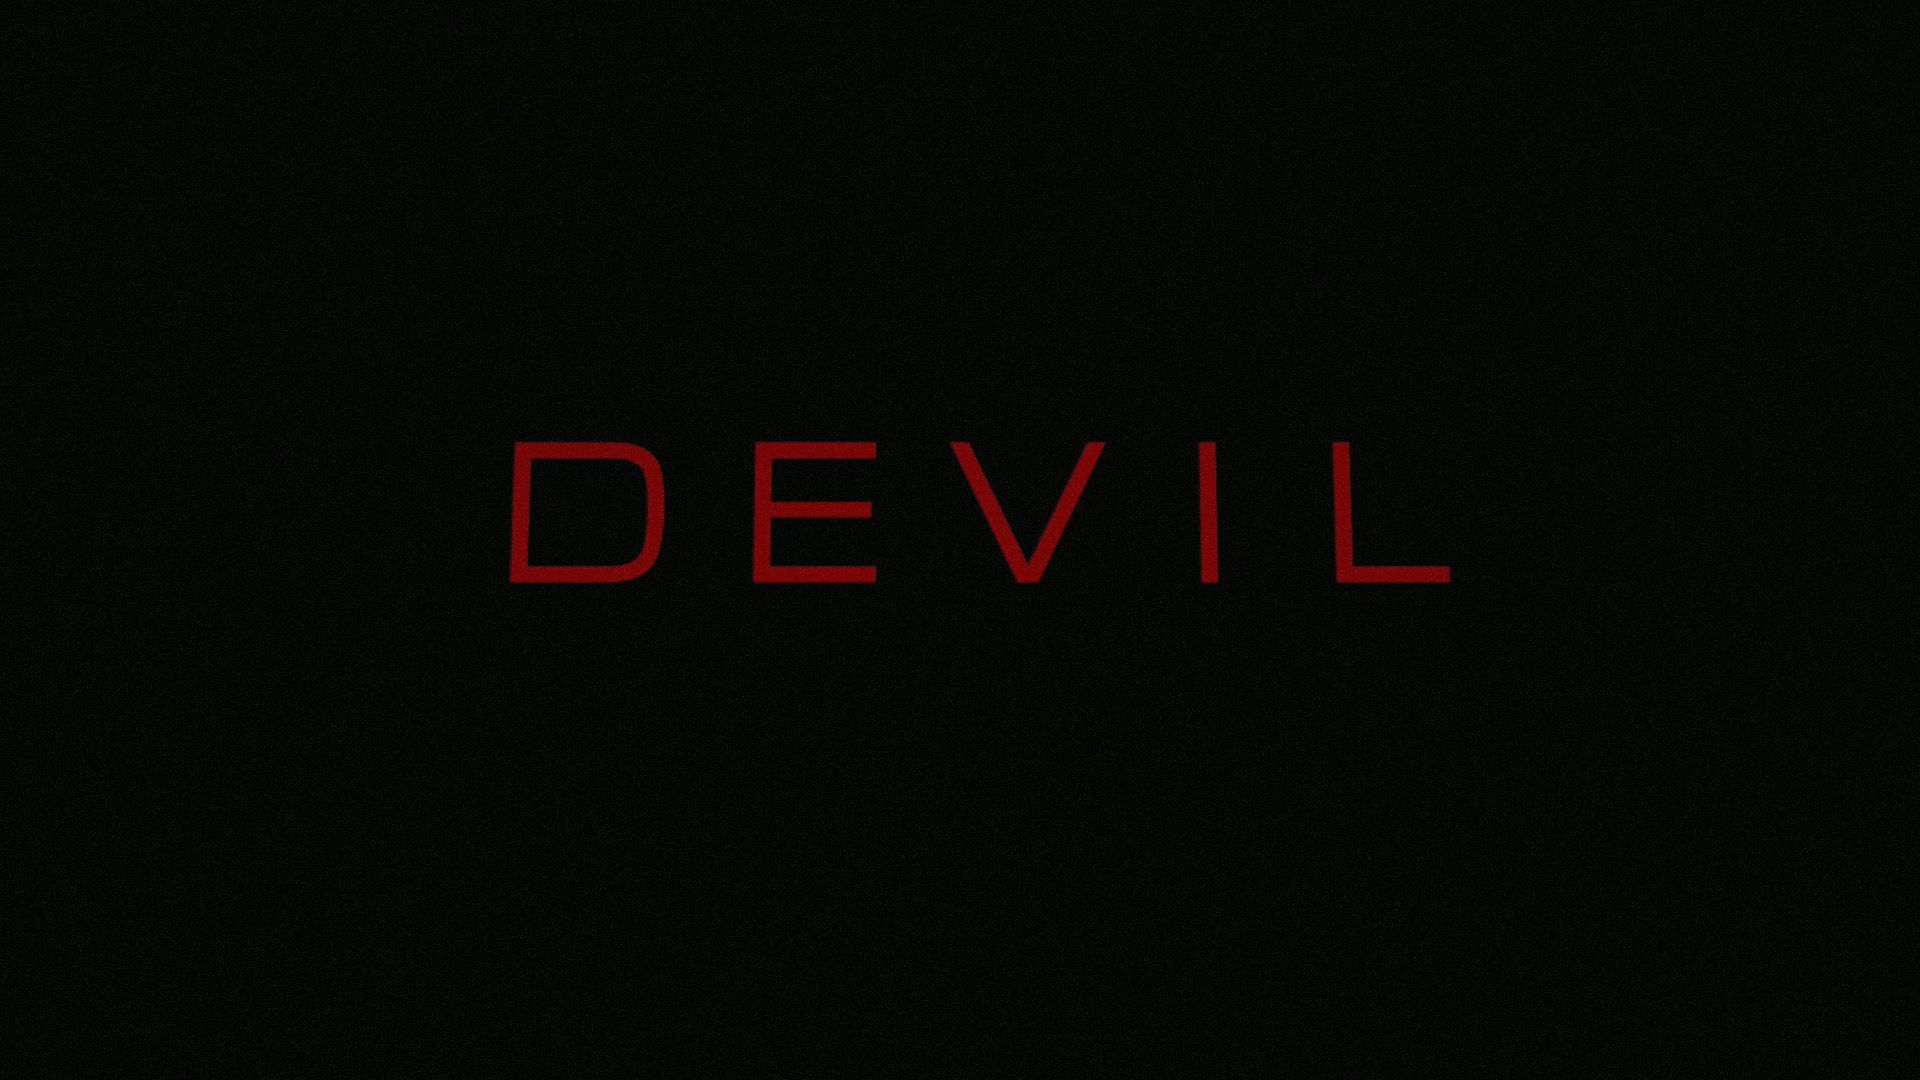 Devil Wallpaper for Desktop